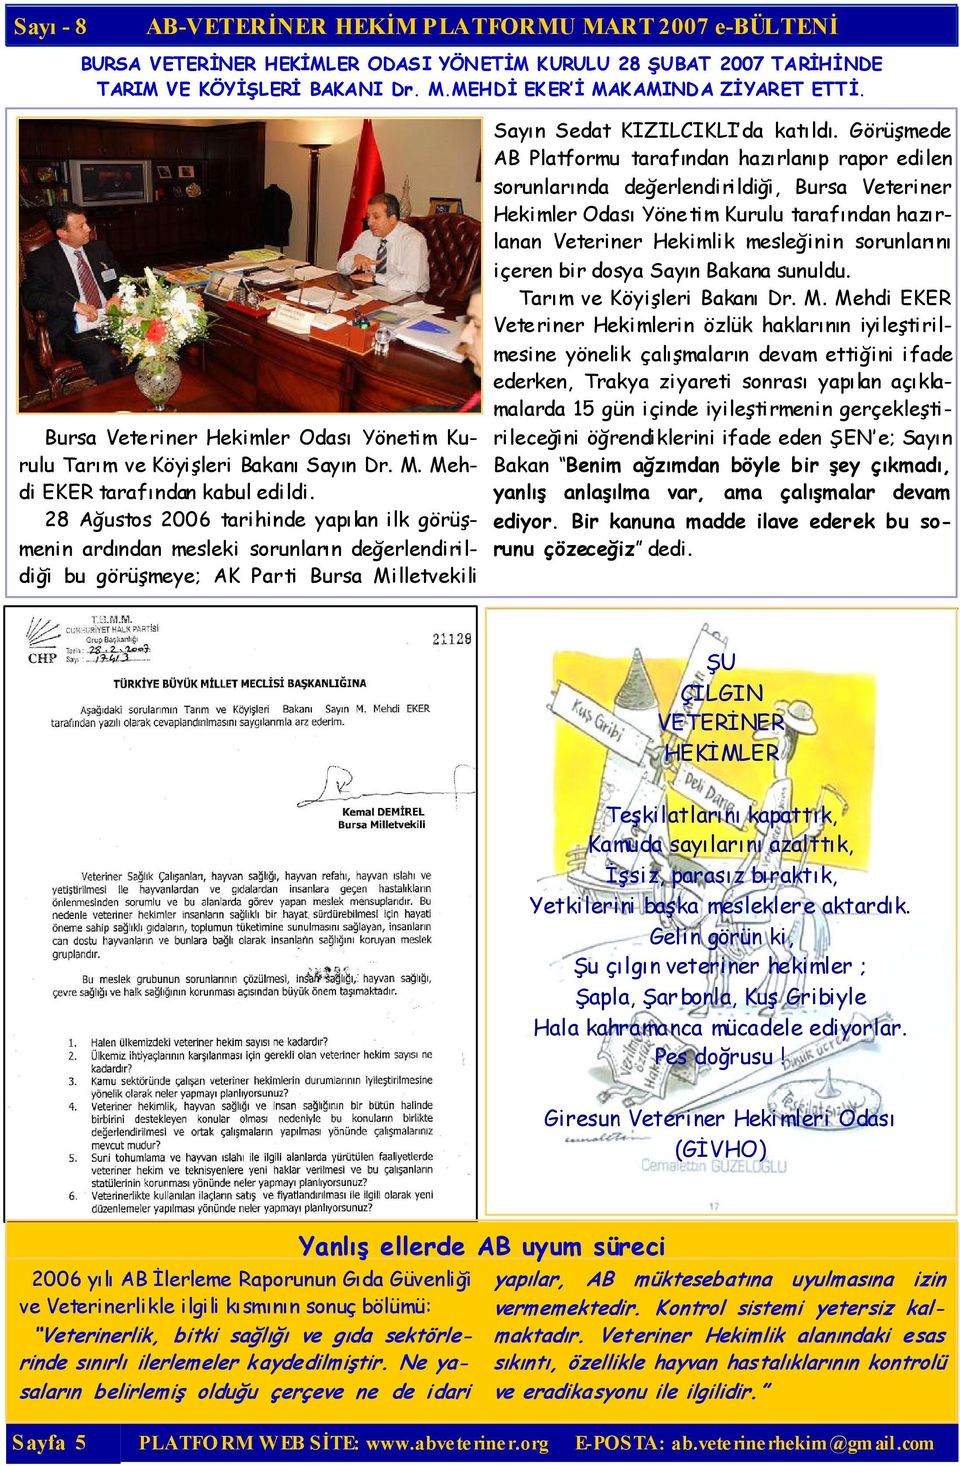 28 Ağustos 2006 tarihinde yapılan ilk görüşmenin ardından mesleki sorunların değerlendirildiği bu görüşmeye; AK Parti Bursa Milletvekili Sayın Sedat KIZILCIKLI da katıldı.